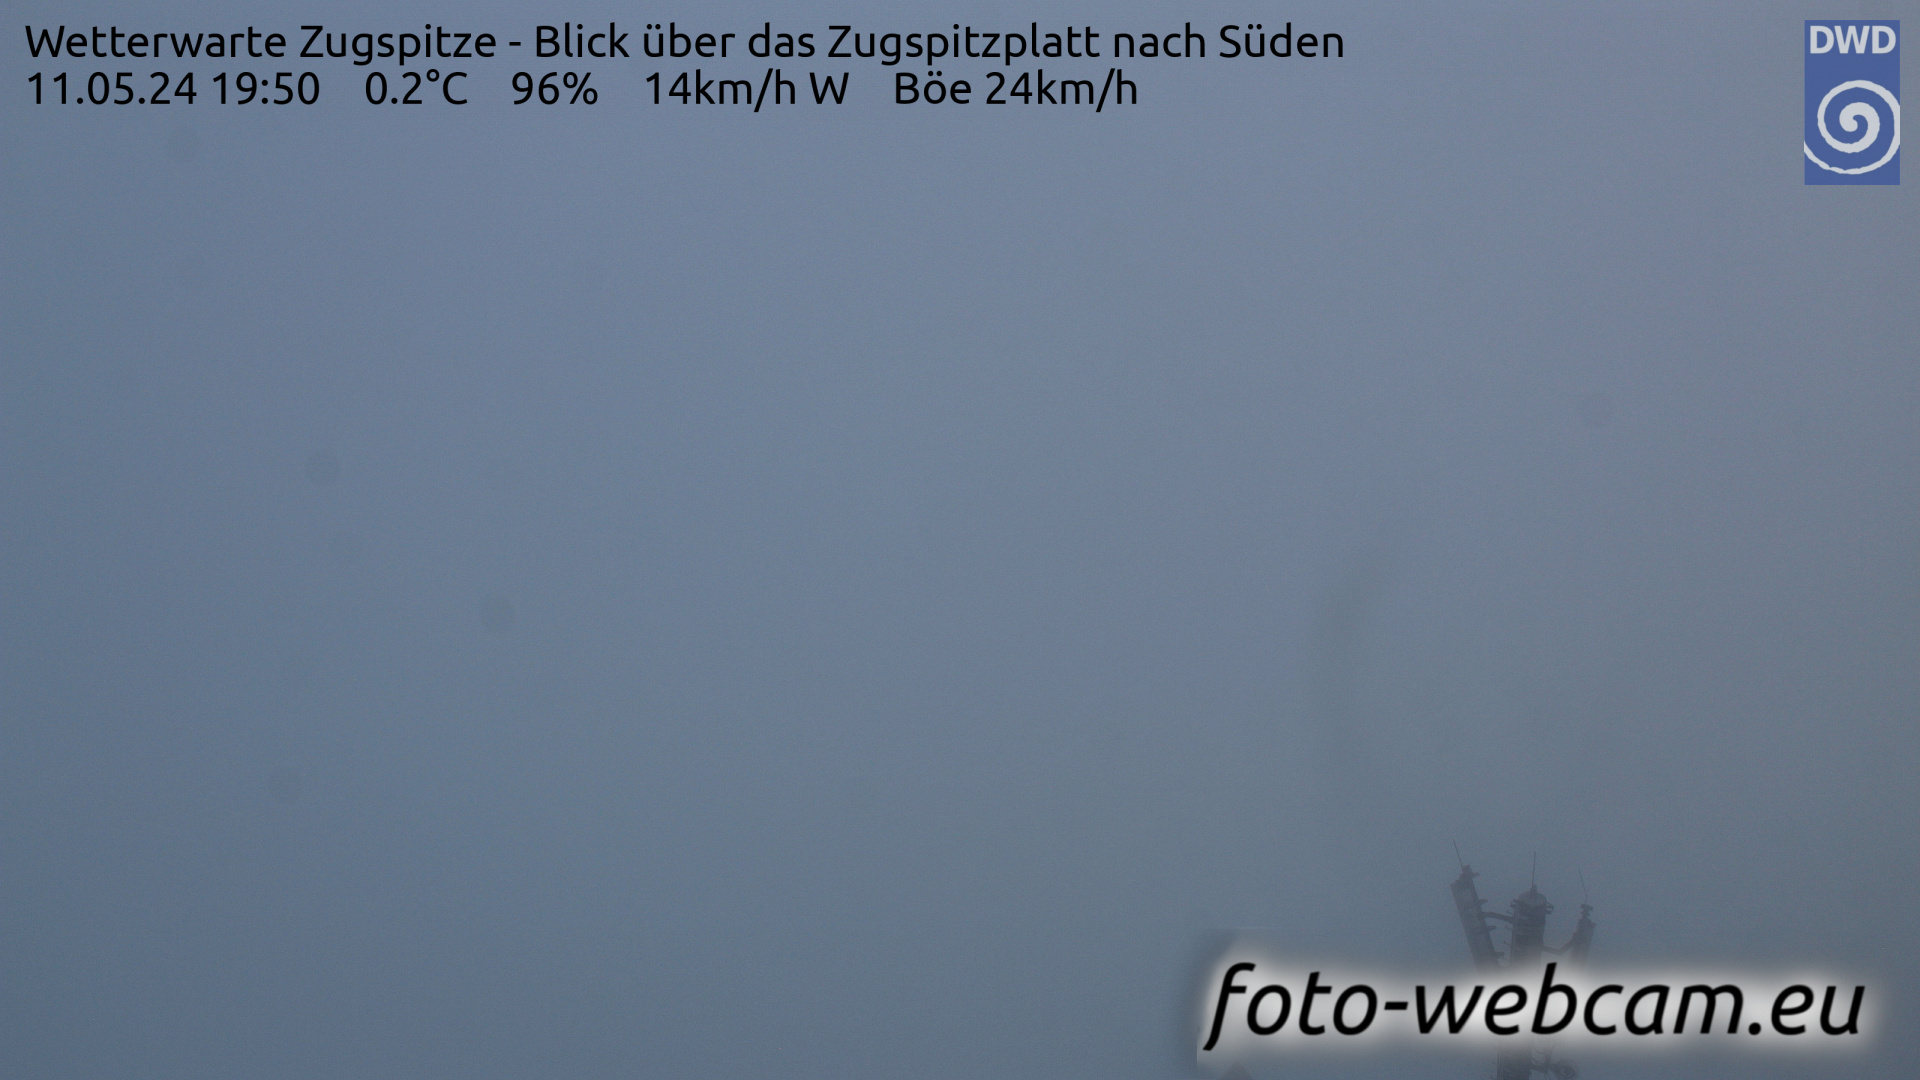 Zugspitze Wed. 19:54